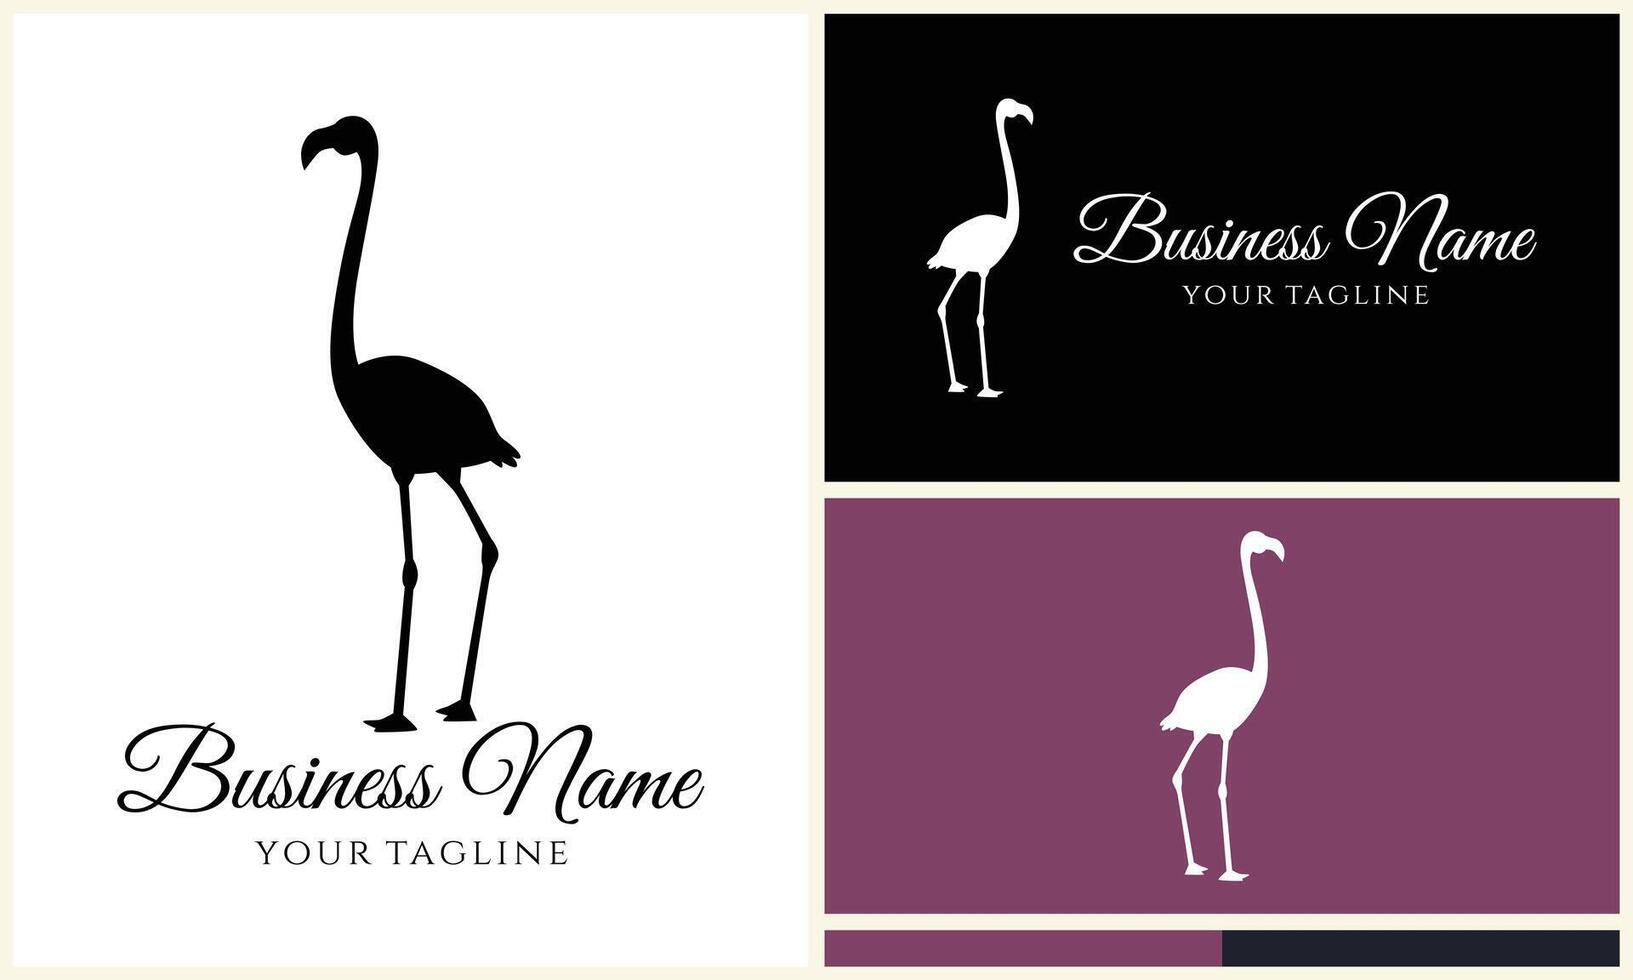 silhouette stork vector logo template